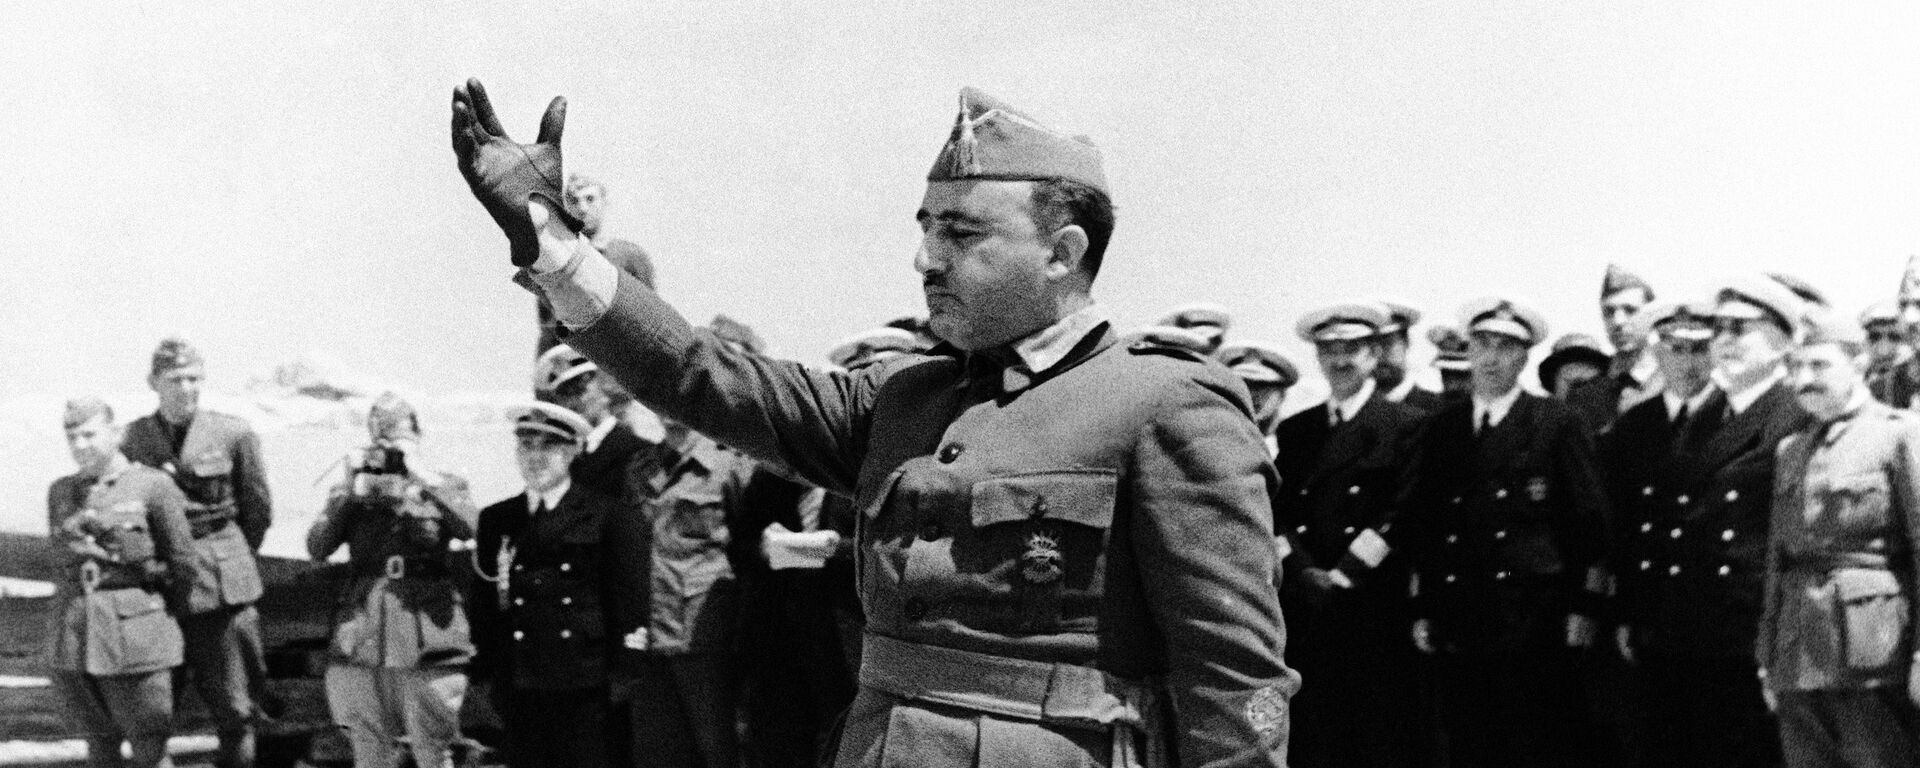 Francisco Franco, dictador español - Sputnik Mundo, 1920, 22.07.2020